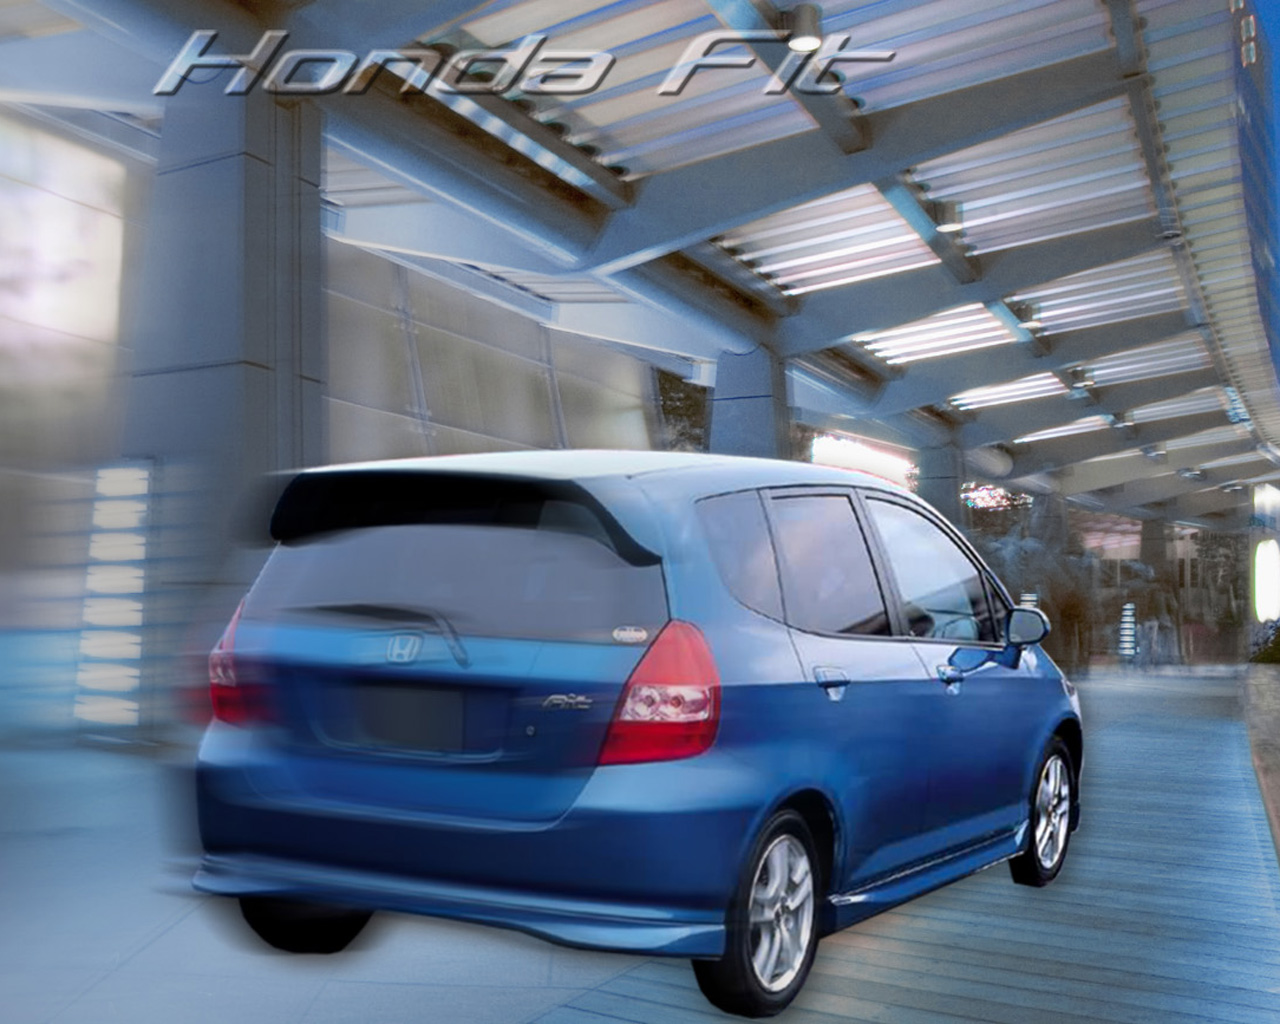 Honda Fit Wallpapers